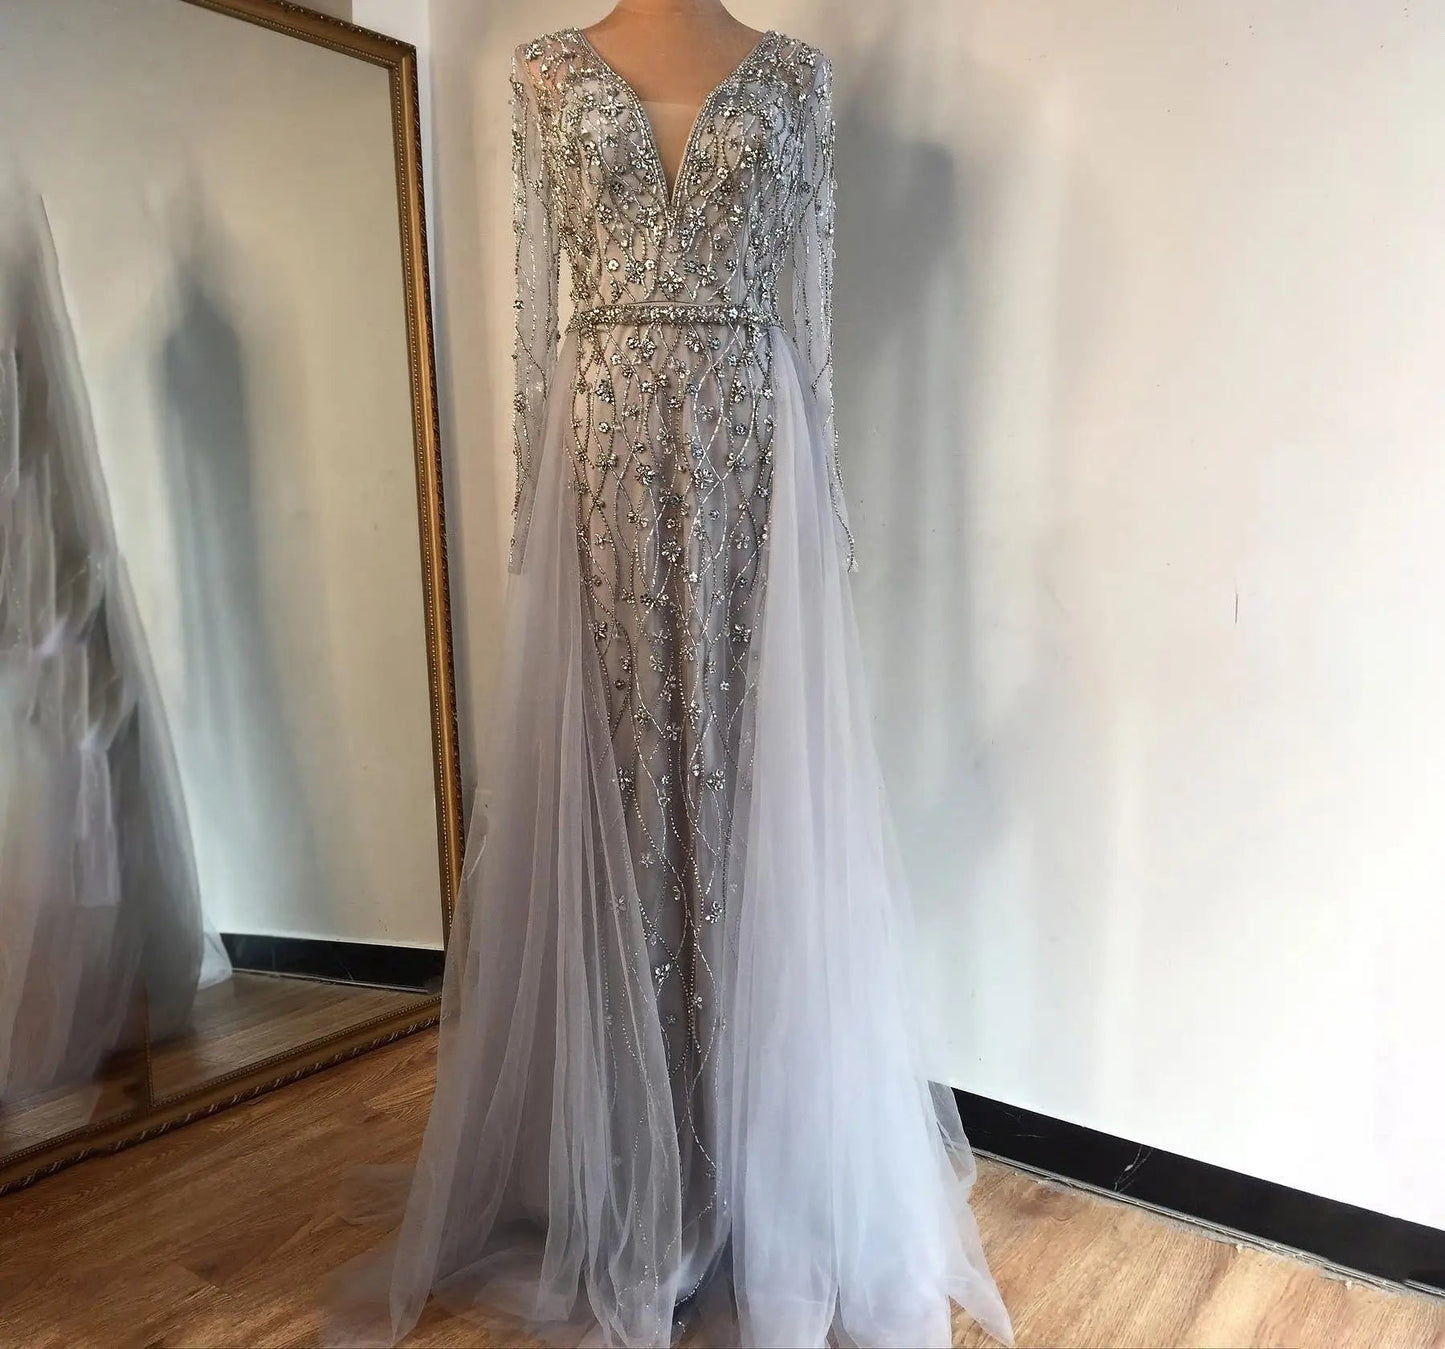 LAYA - Beaded Embellished Evening Gown - Mscooco.co.uk